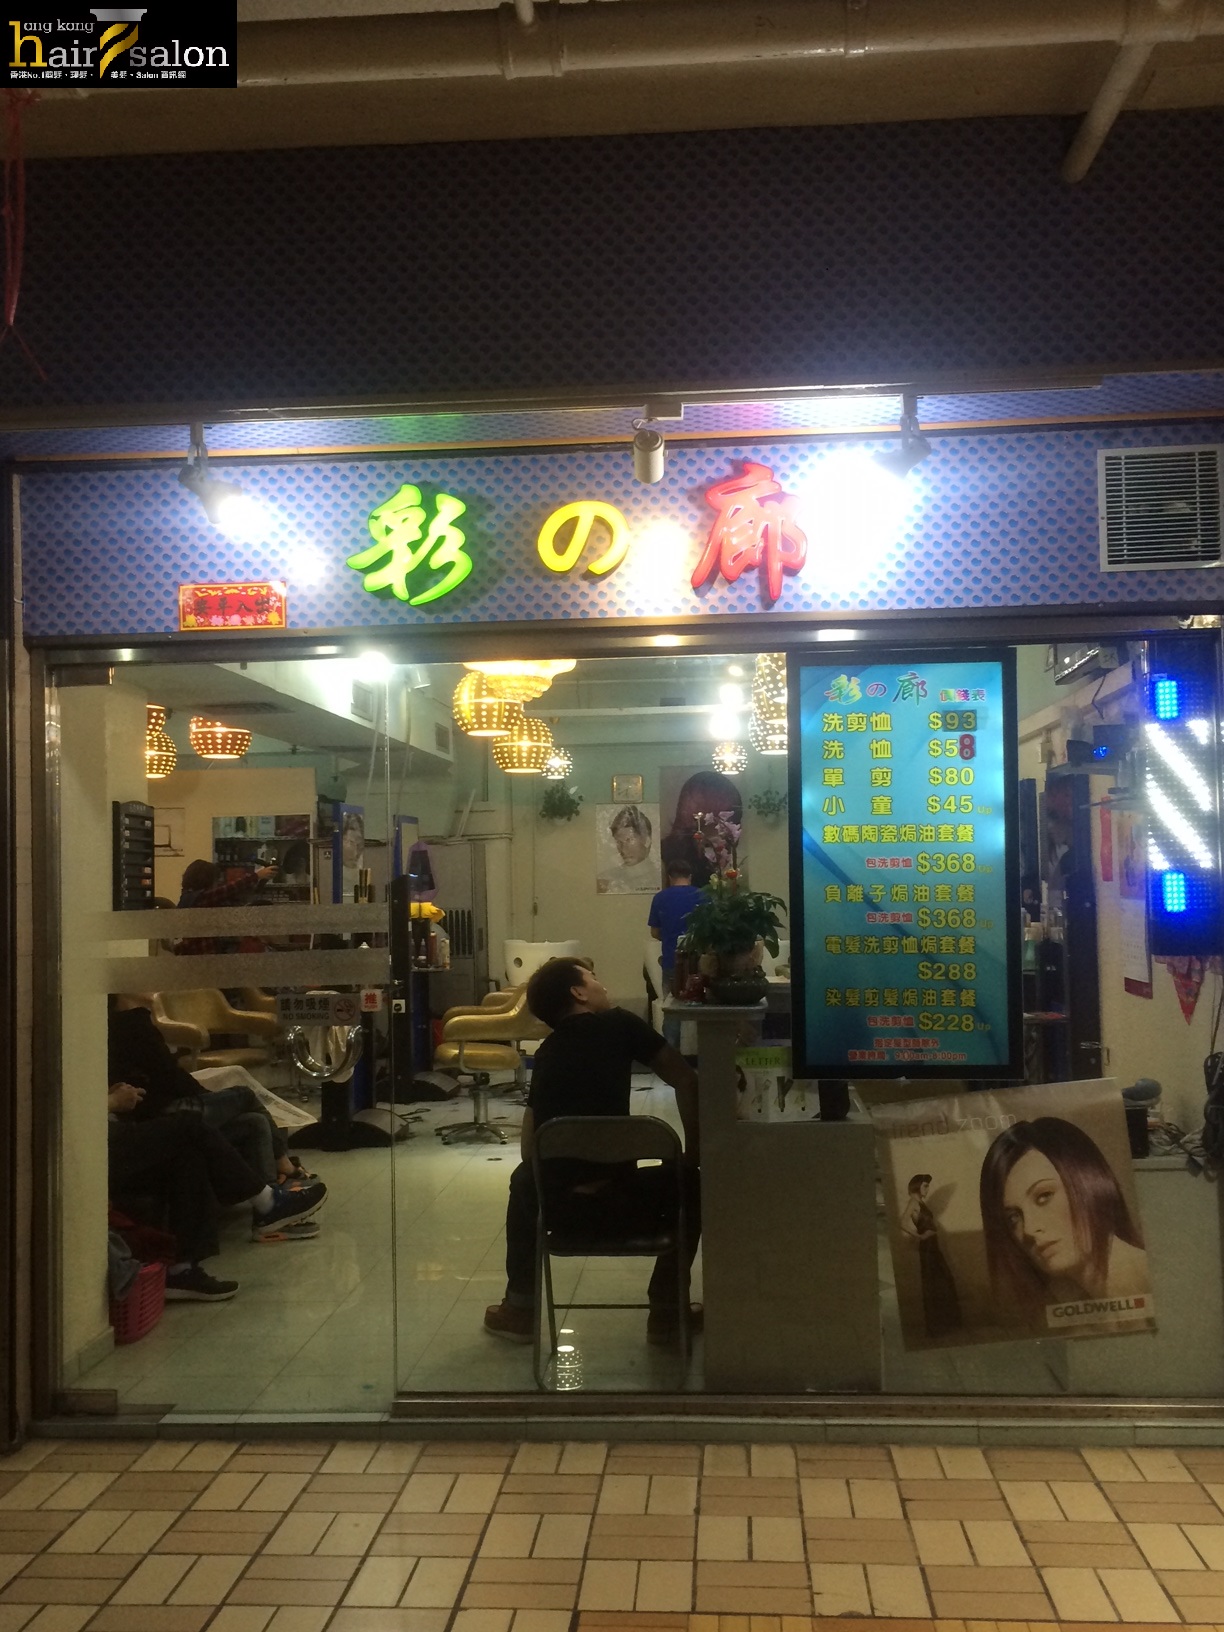 髮型屋: 彩之廊 Choi s salon